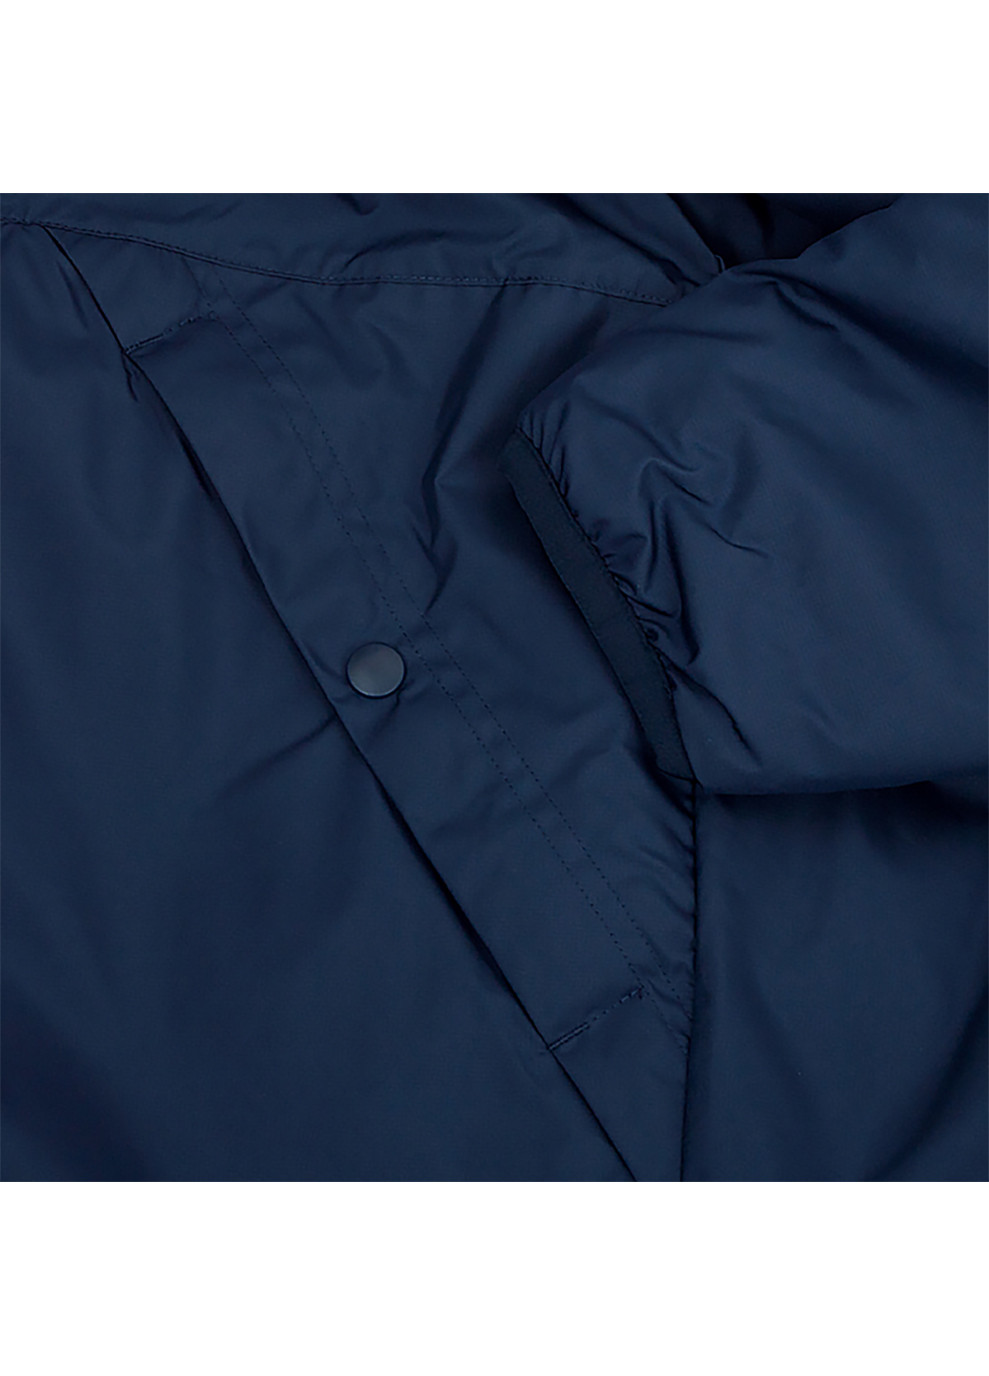 Синяя демисезонная мужская куртка m nk syn fl rpl park20 sdf jkt синий l (cw6156-451 l) Nike